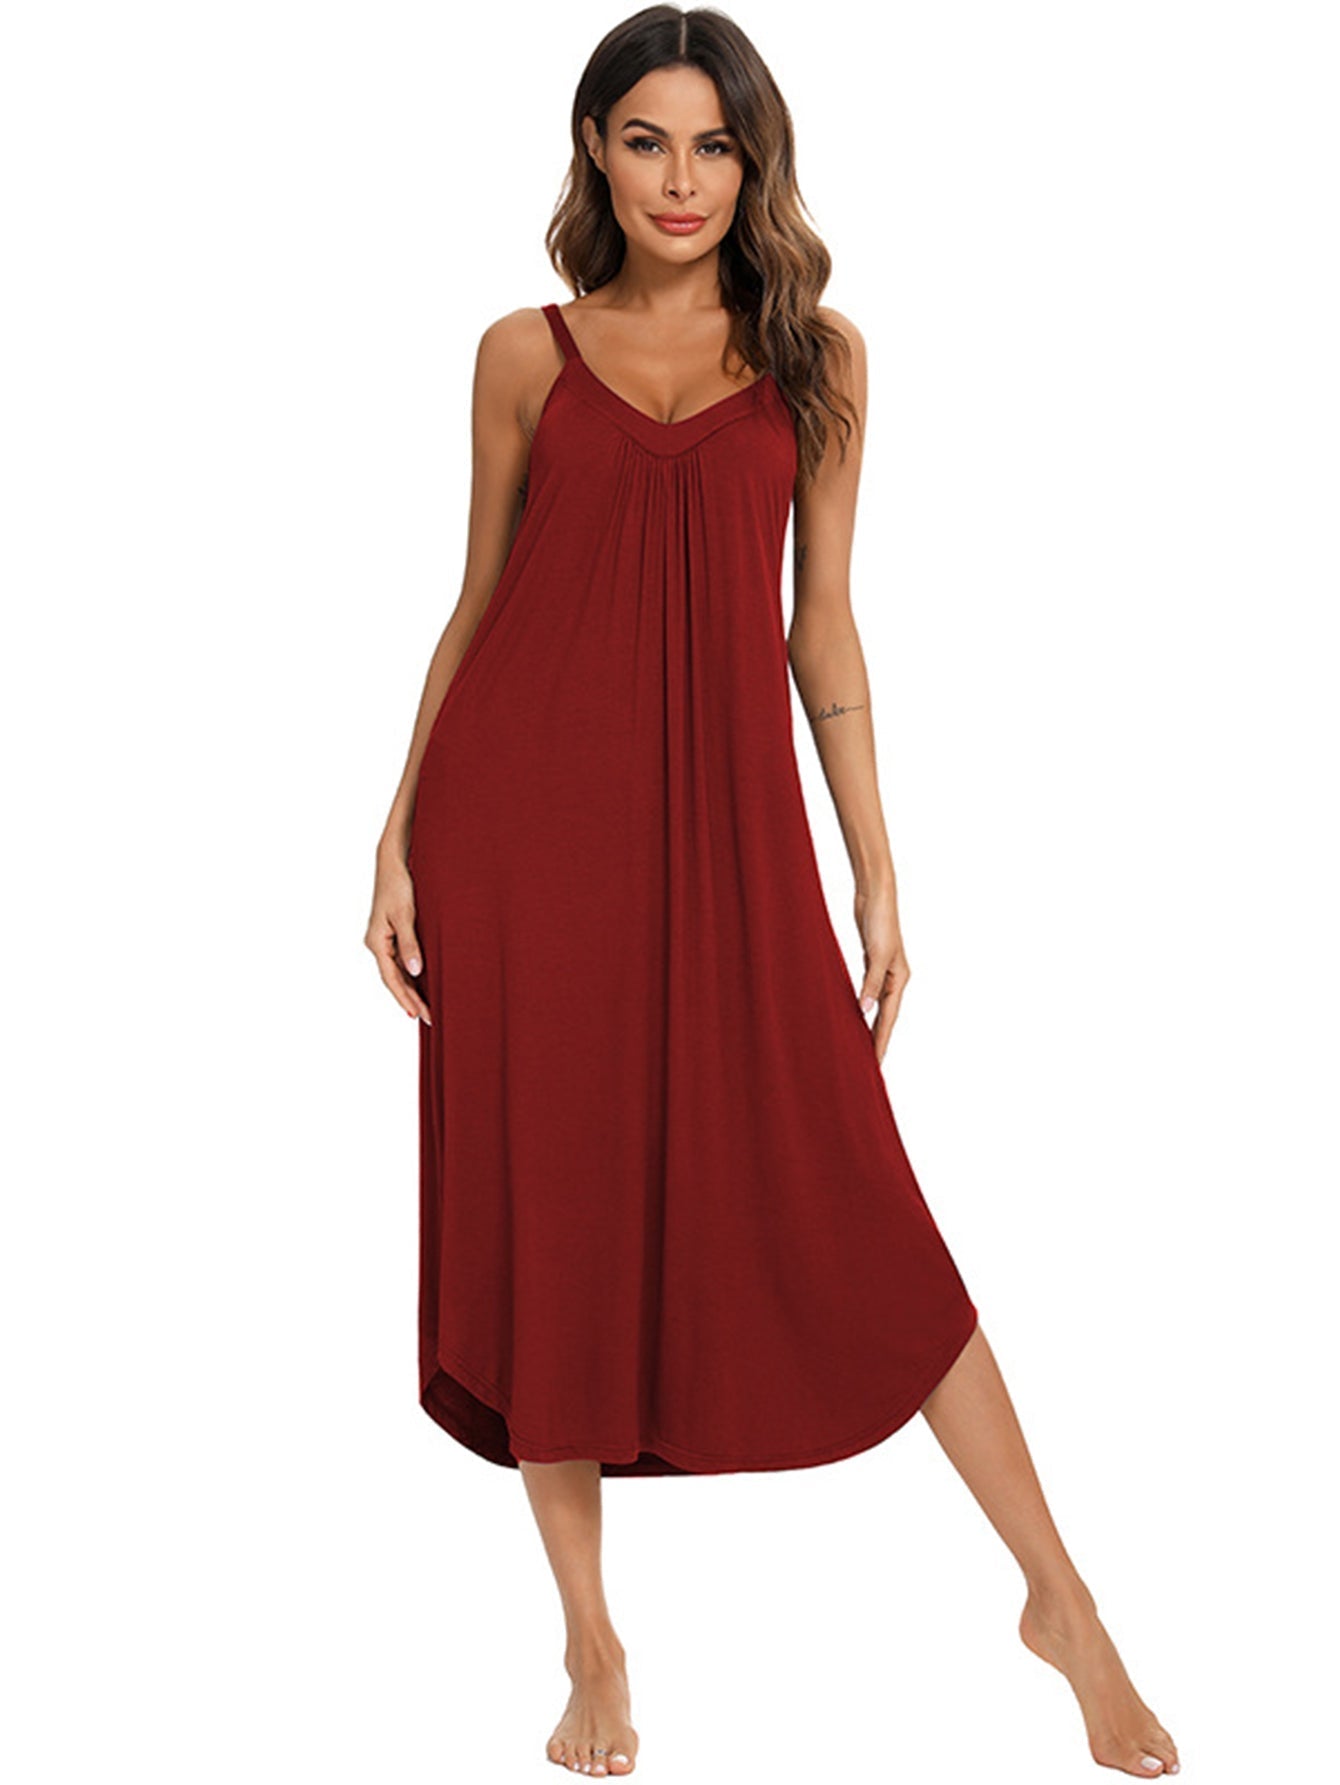 Model Cami Dress Loungewear Sleepwear Dress Sai Feel